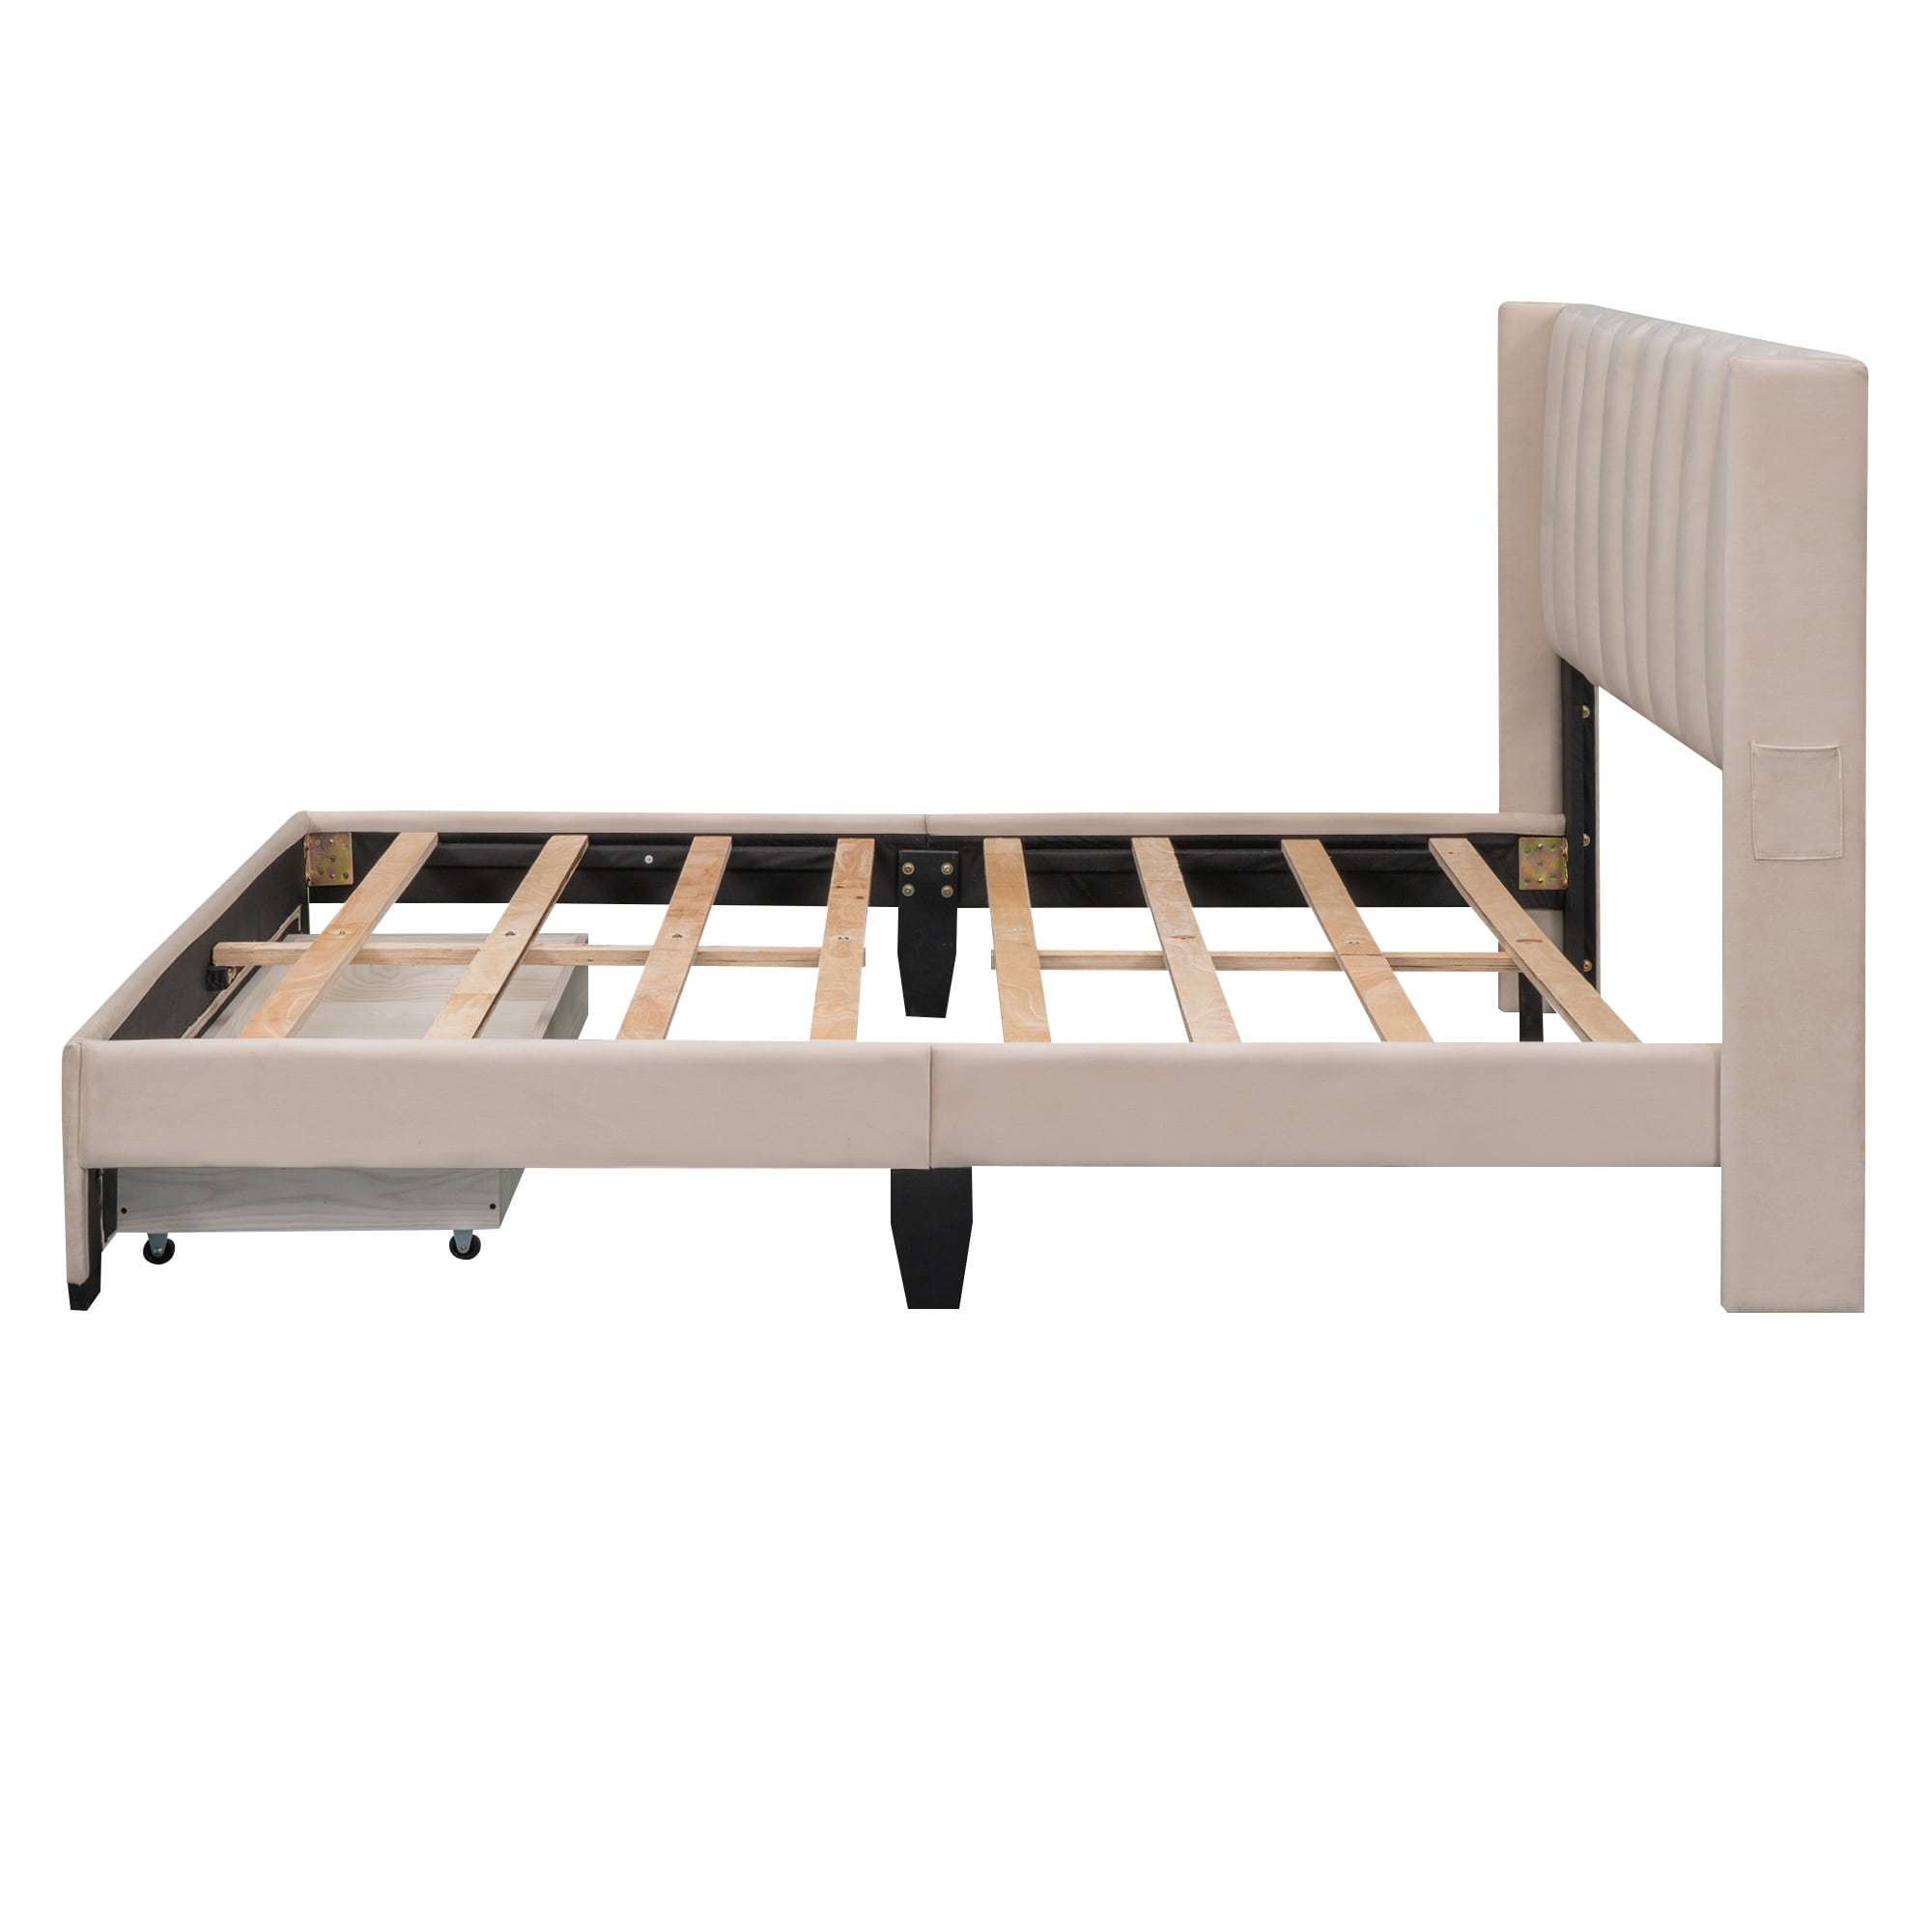 Queen Velvet Upholstered Platform Bed, Storage Bed w/A Big Drawer & 2 Small Pockets, Wooden Bed Frame w/Wood Slats Support,Beige